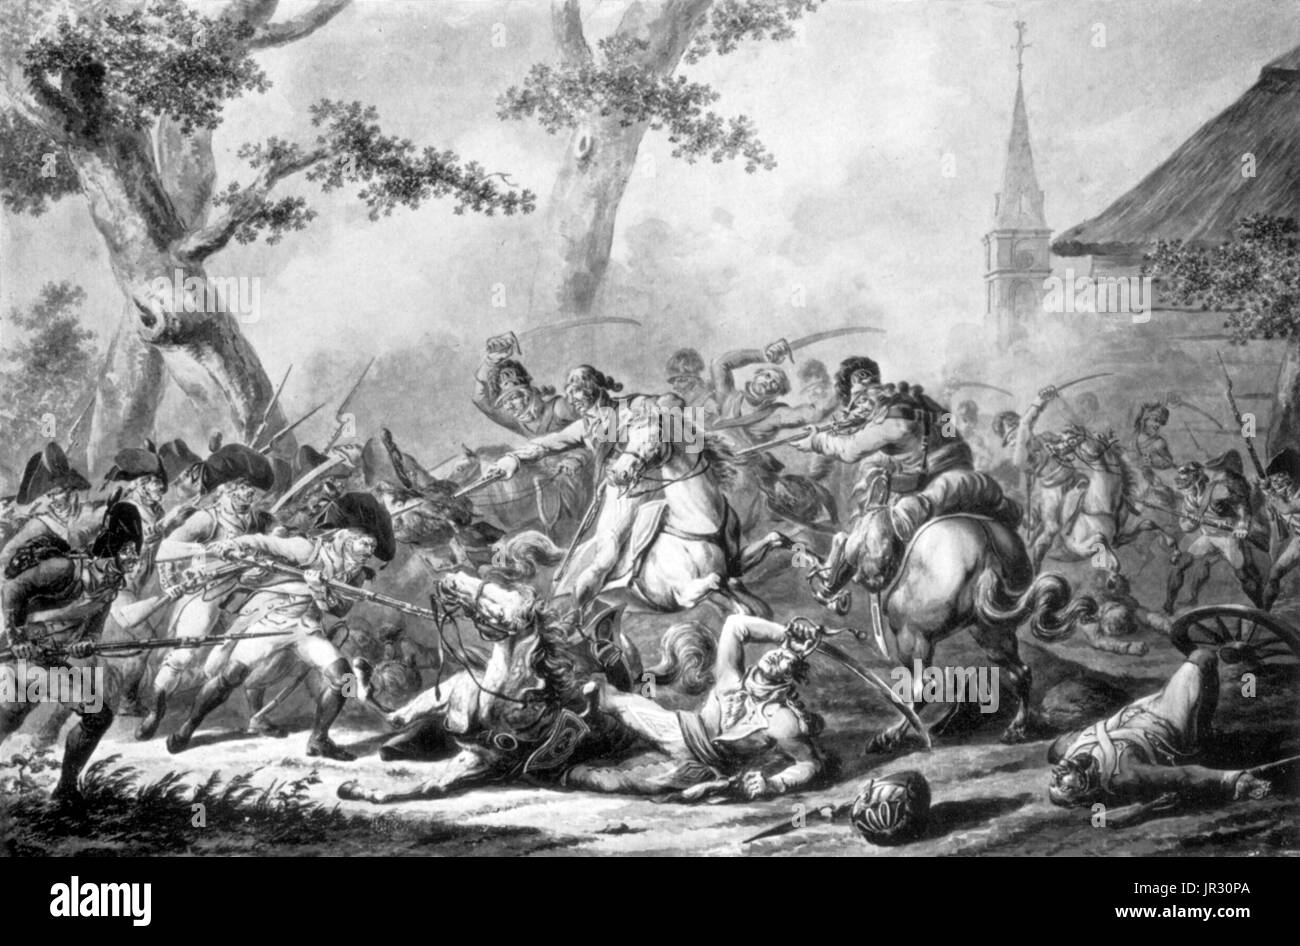 Guerras Napoleónicas,dragones Foto de stock